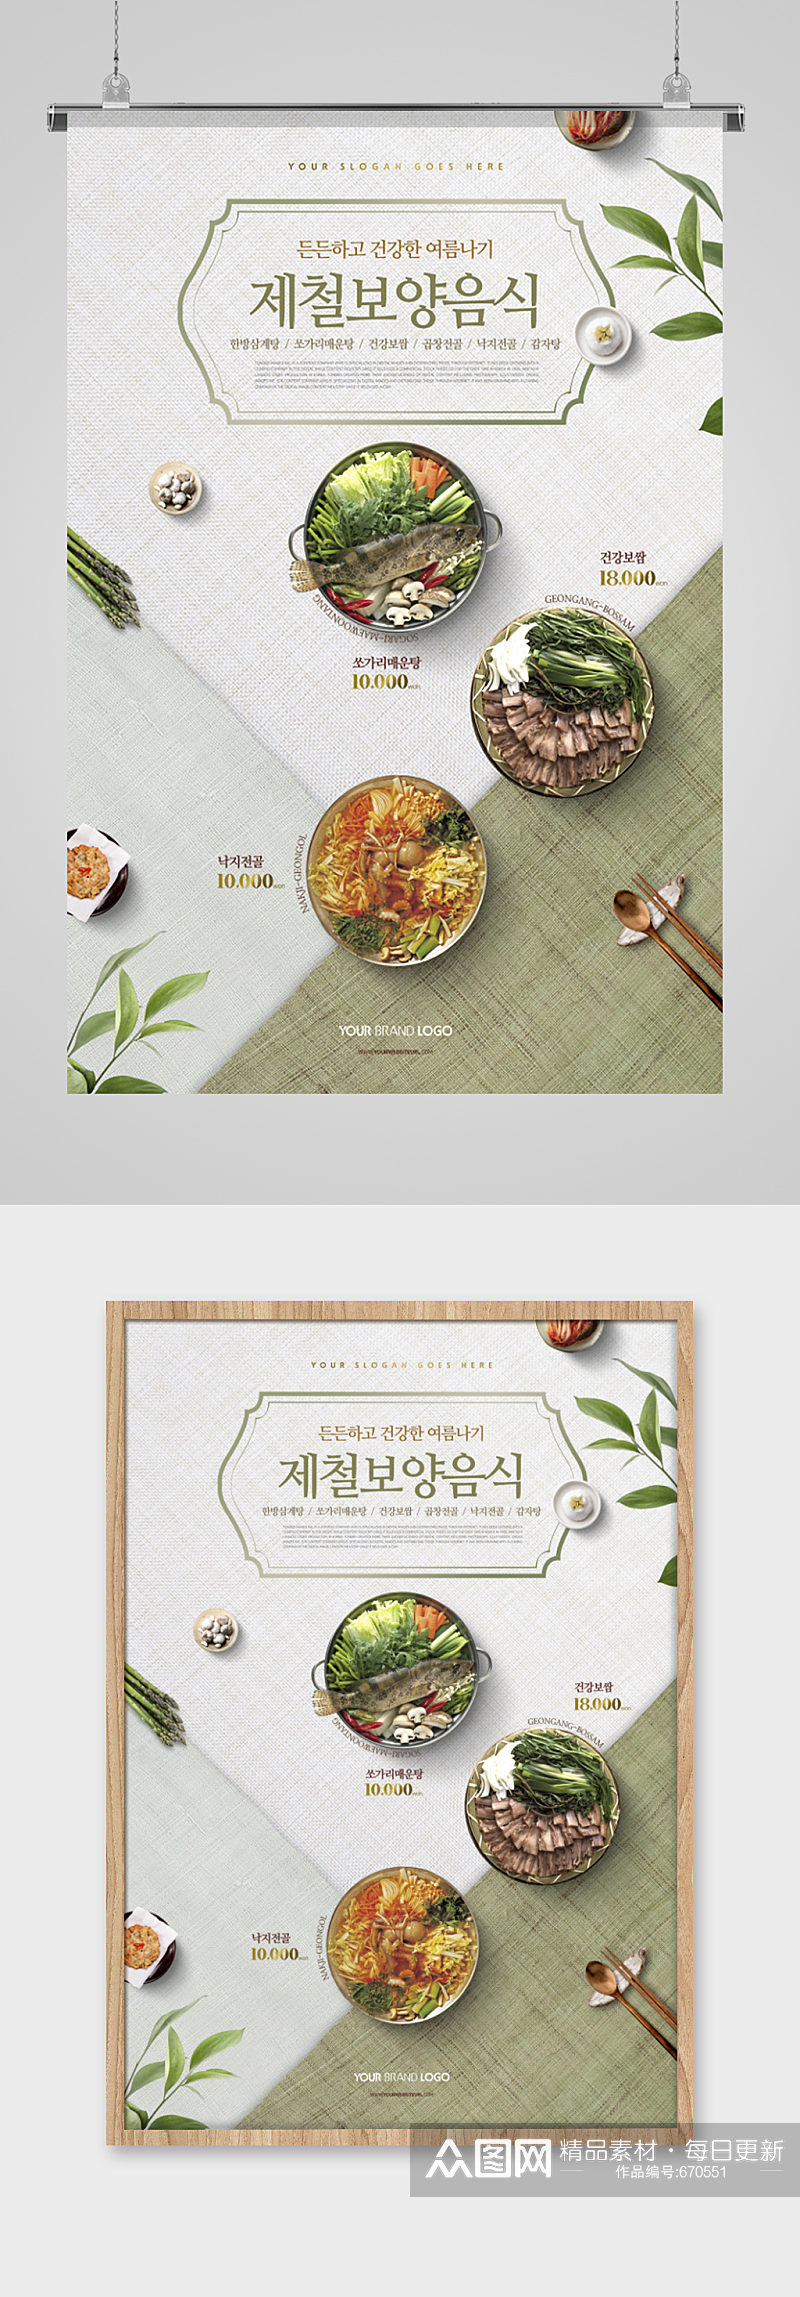 韩国特色美食海报素材